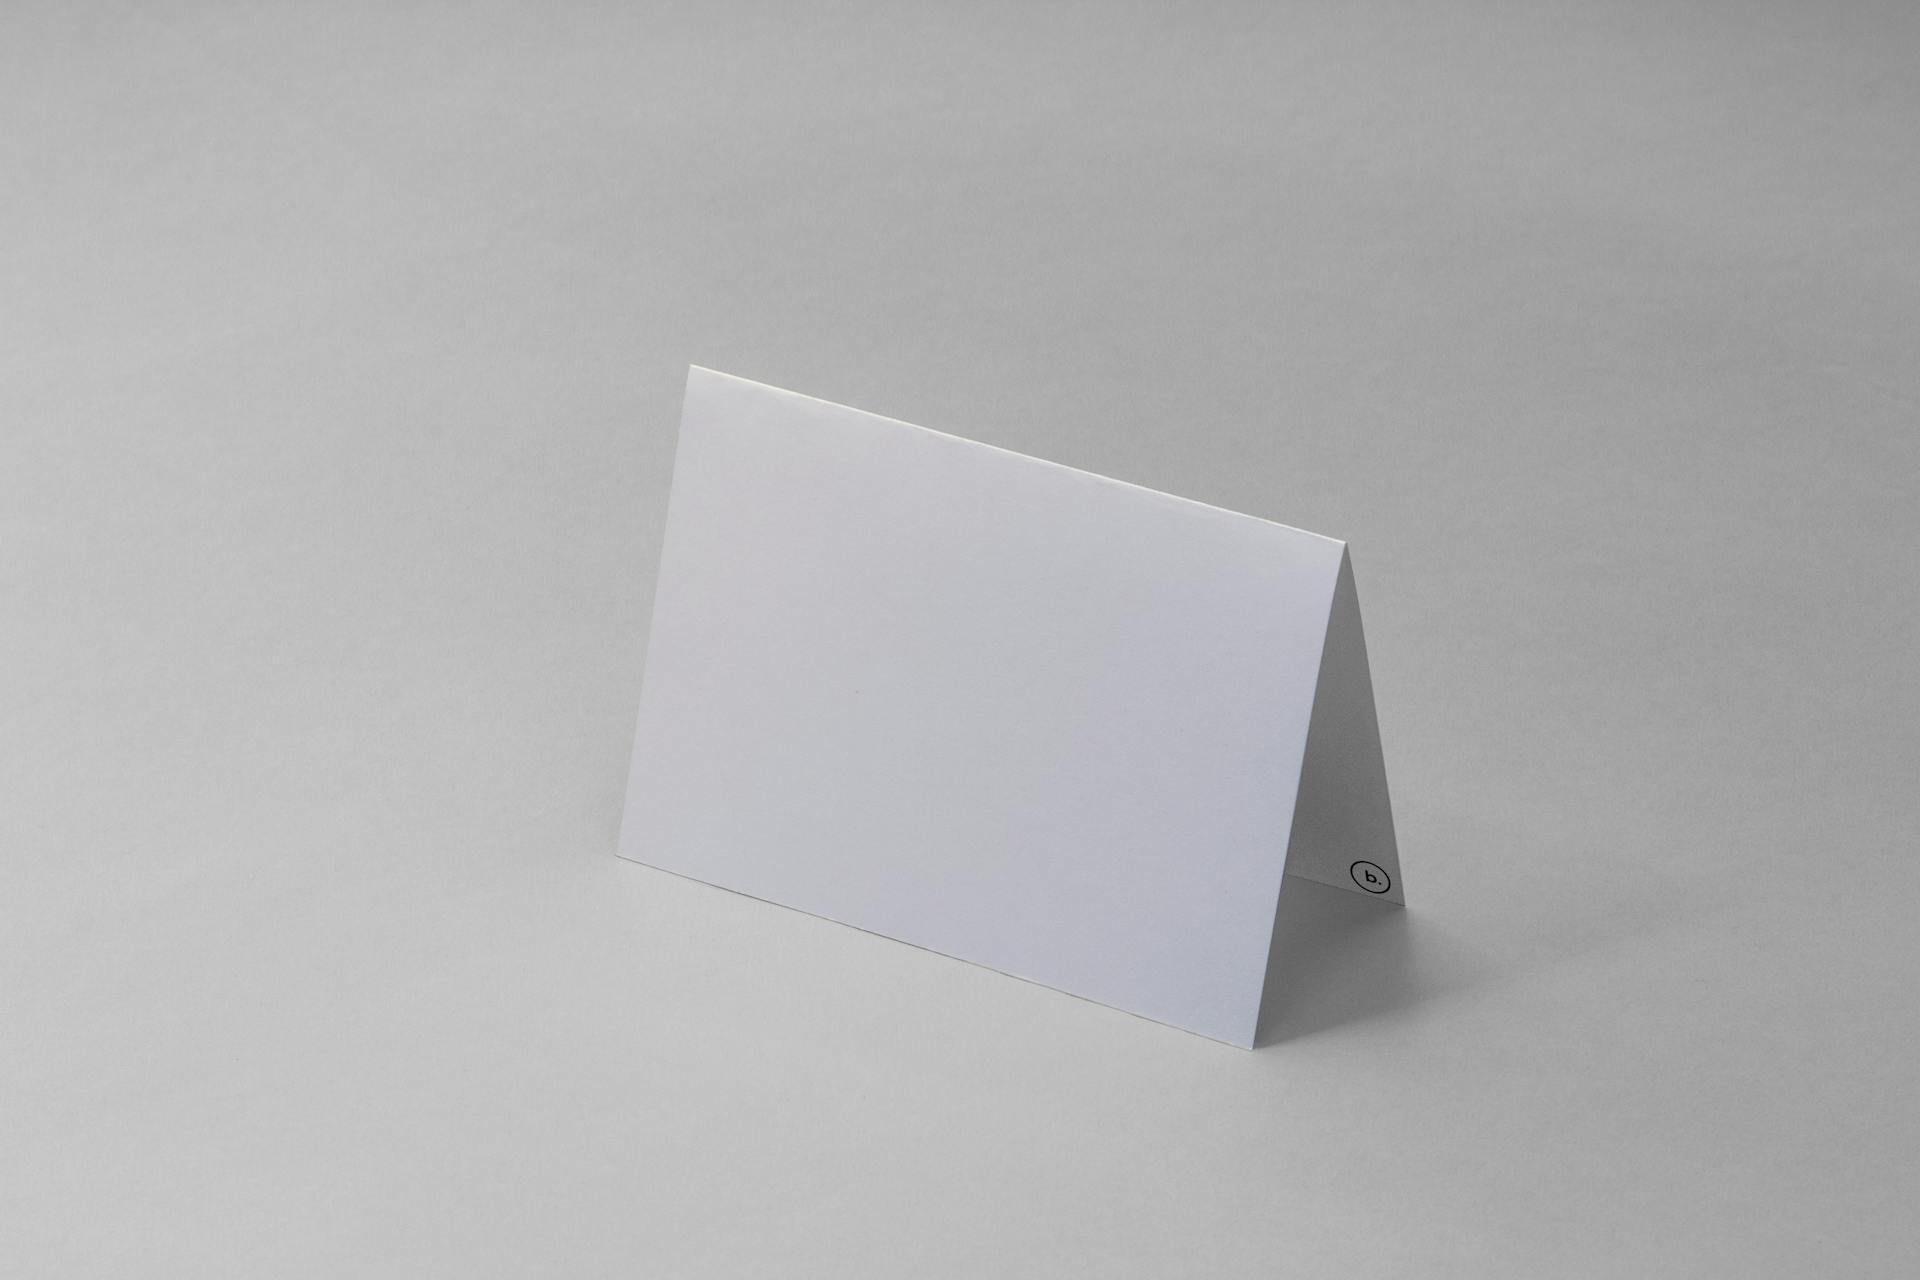 Papel blanco doblado | Fuente: Pexels